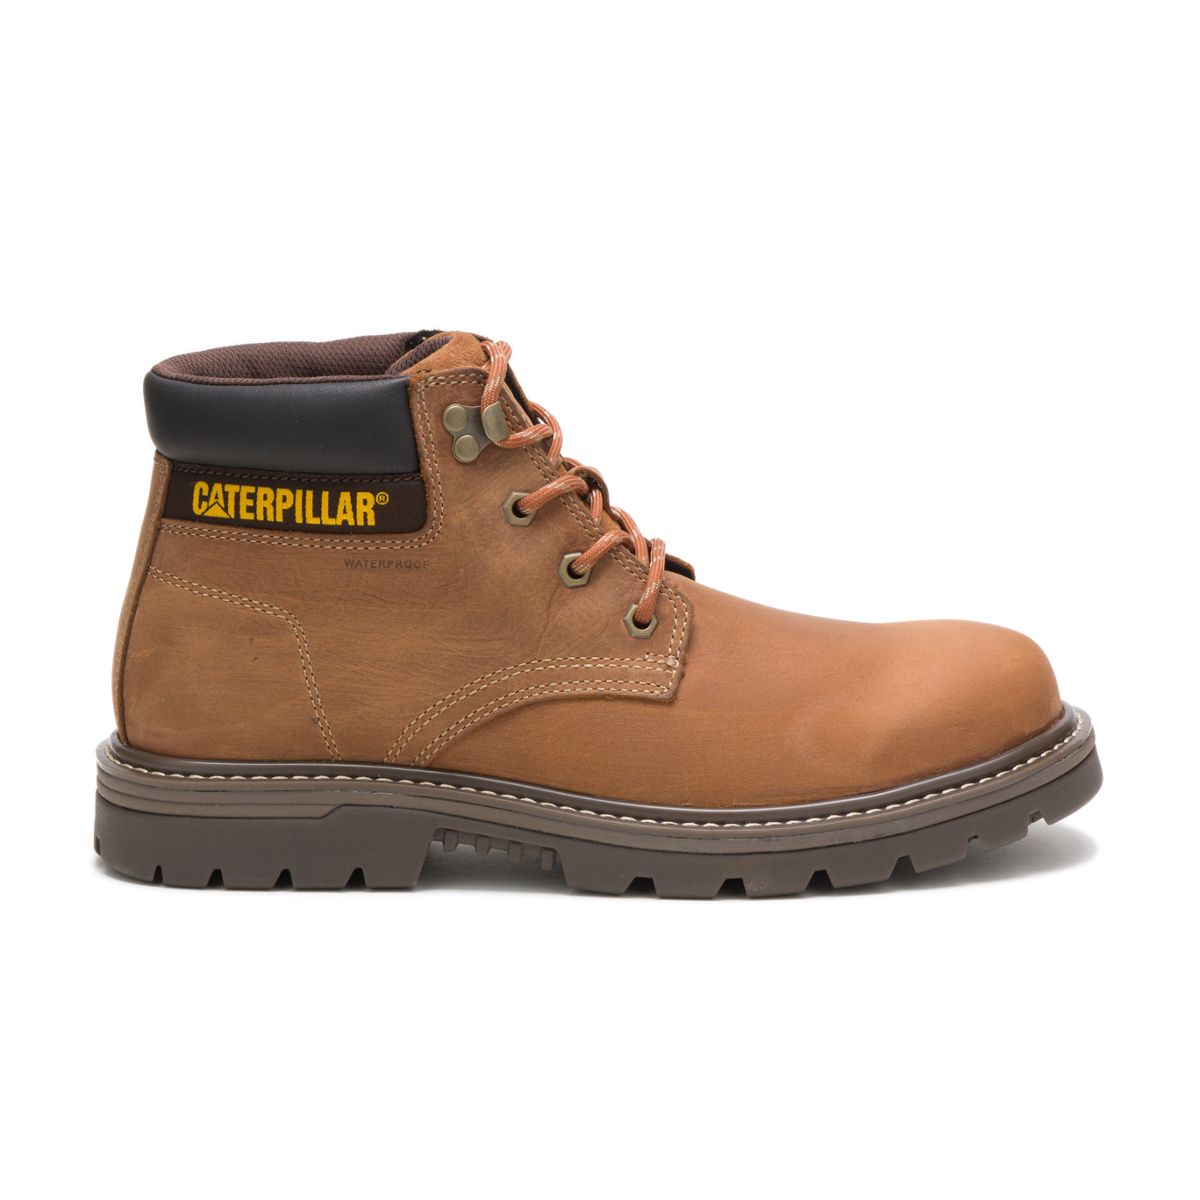 Caterpillar Outbase Waterproof Work Boot Men Brown - Walmart.com